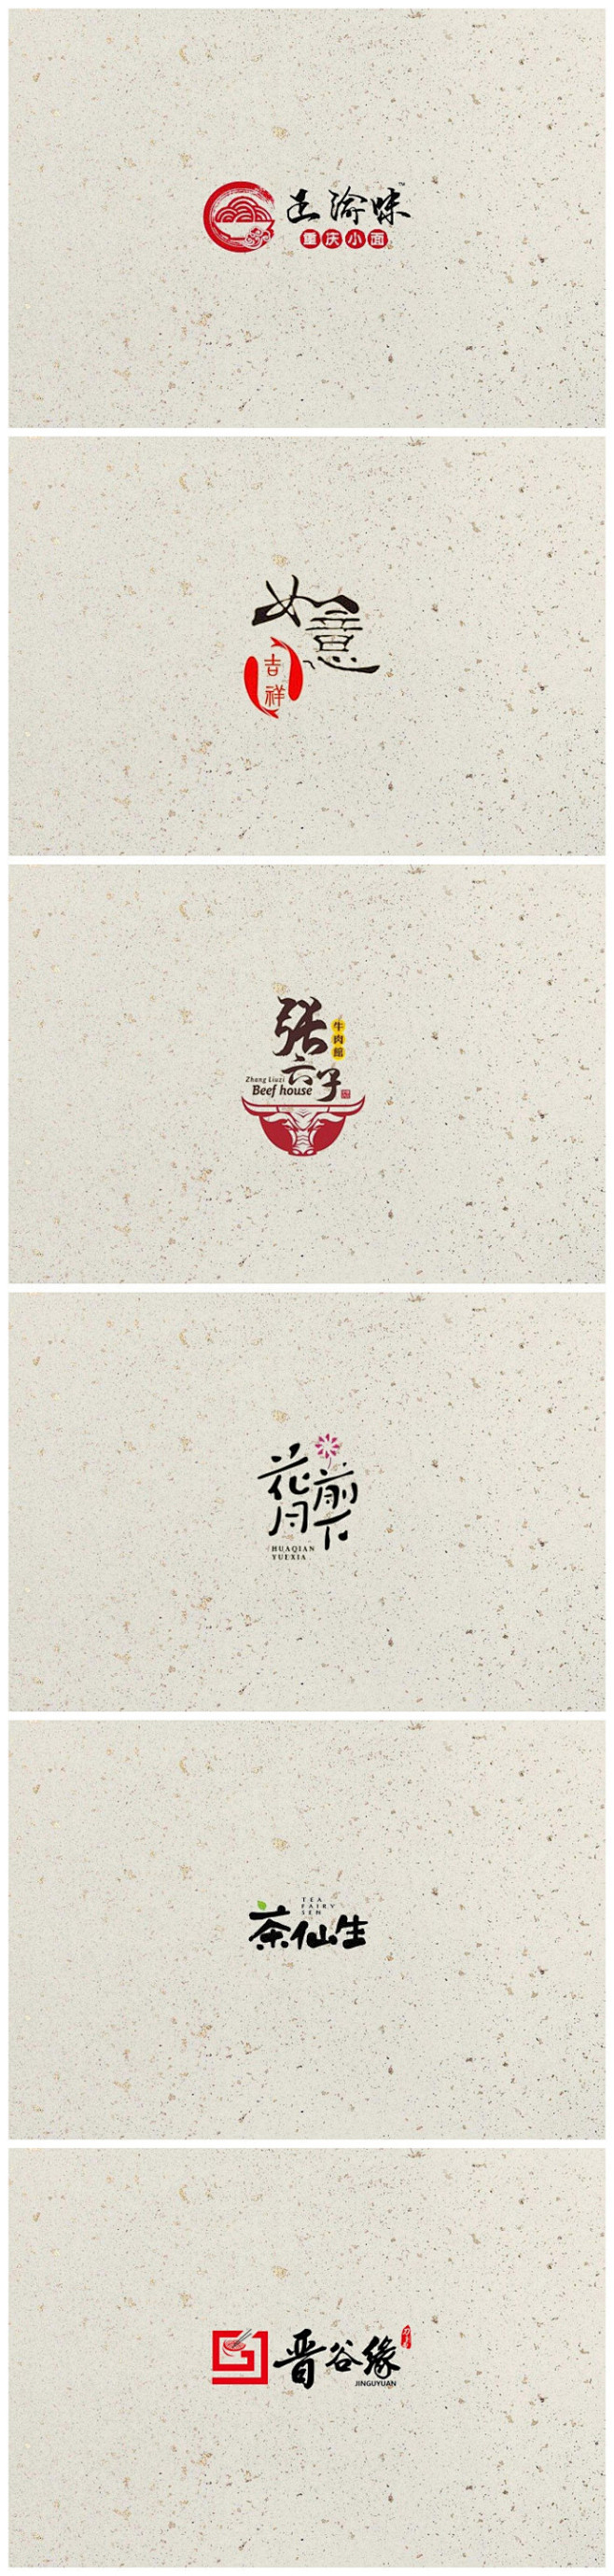 中国风的logo设计